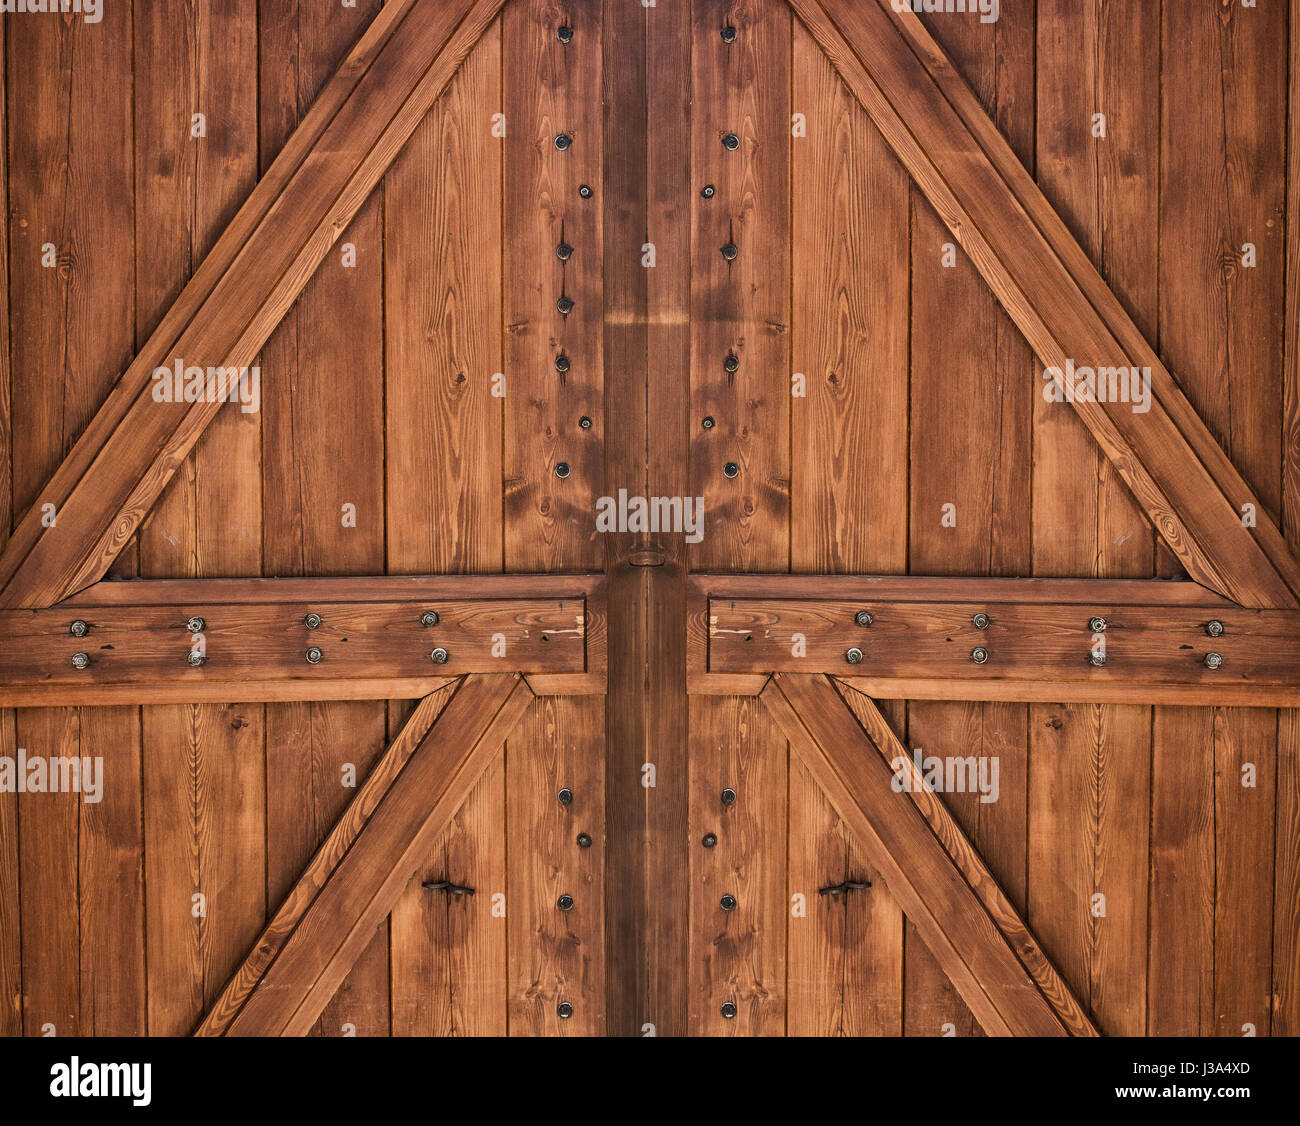 Wooden door with two crosses Stock Photo